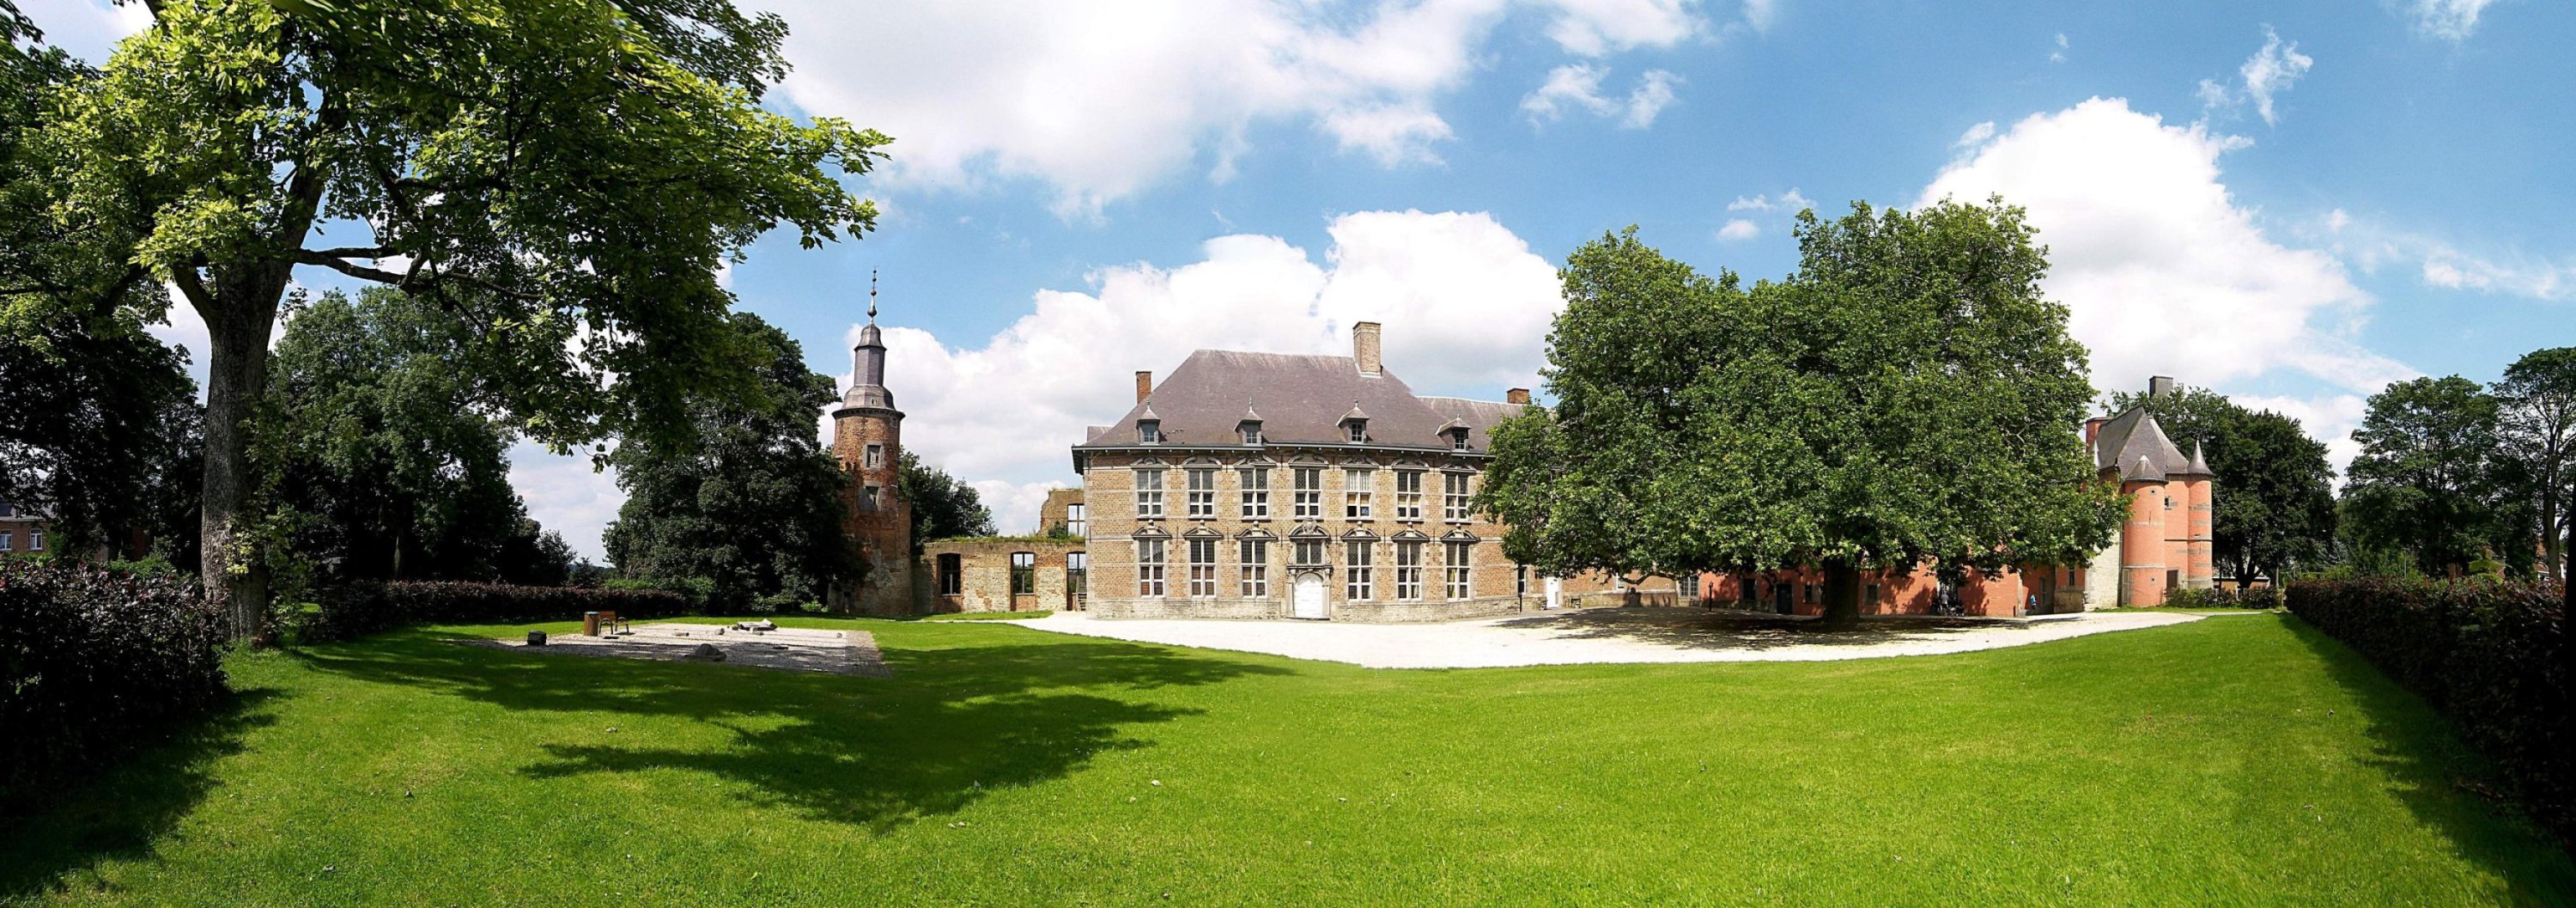 Visitare il Castello di Trazegnies a Charleroi